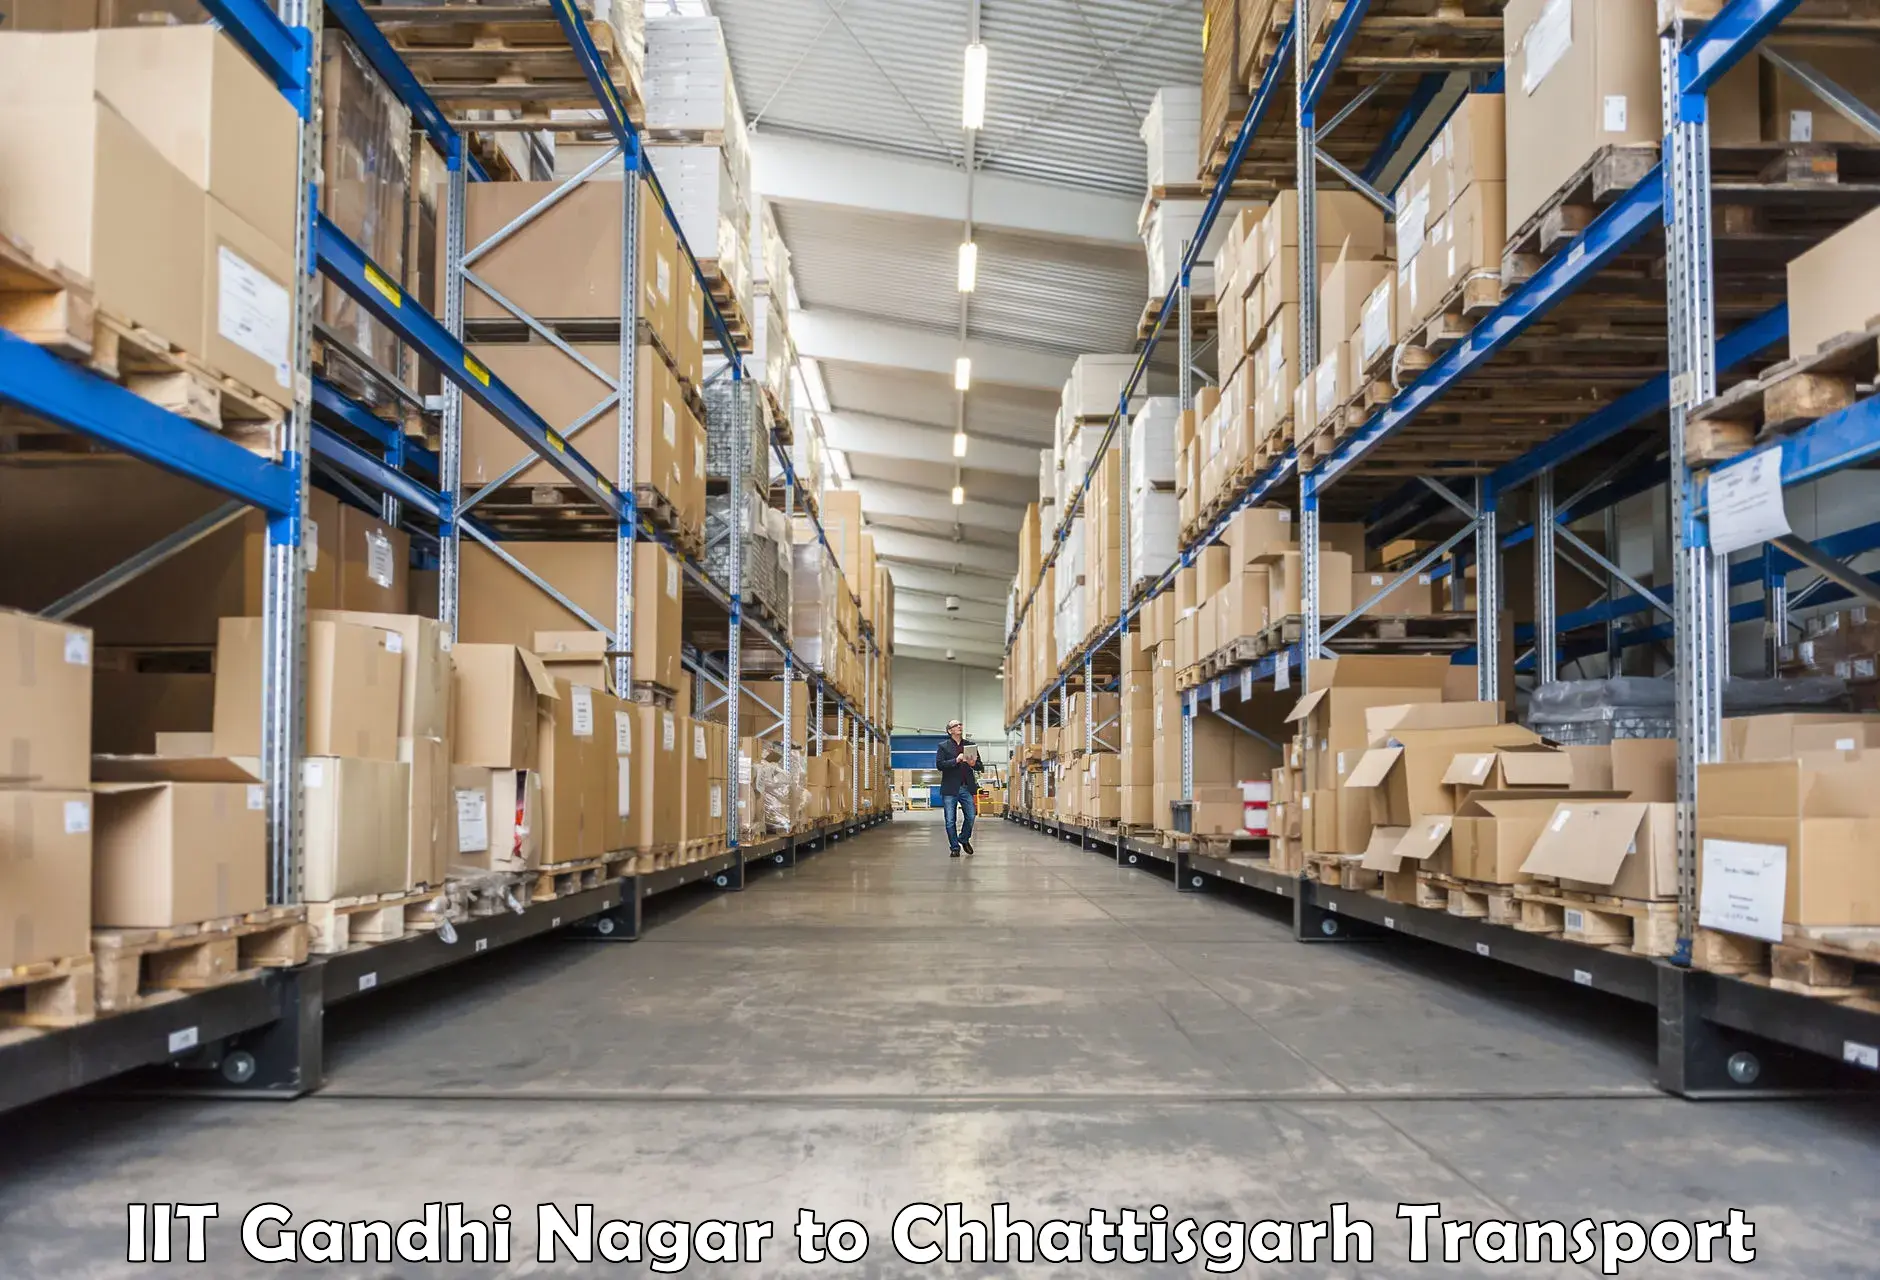 Daily parcel service transport IIT Gandhi Nagar to Pithora